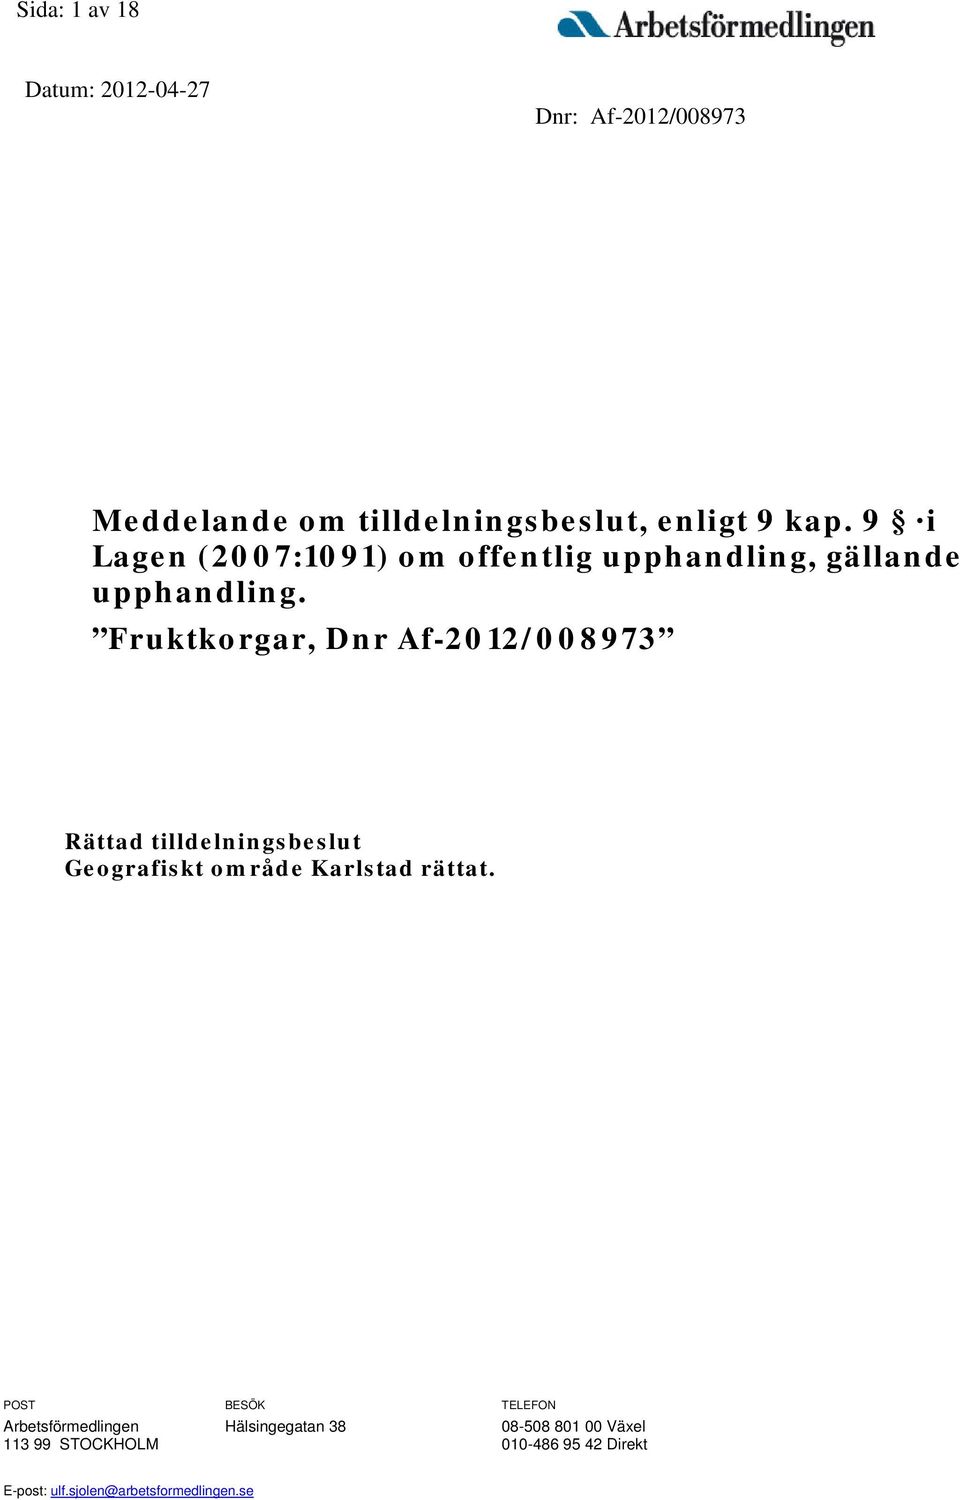 Fruktkorgar, Dnr Af-2012/008973 Rättad tilldelningsbeslut Karlstad rättat.